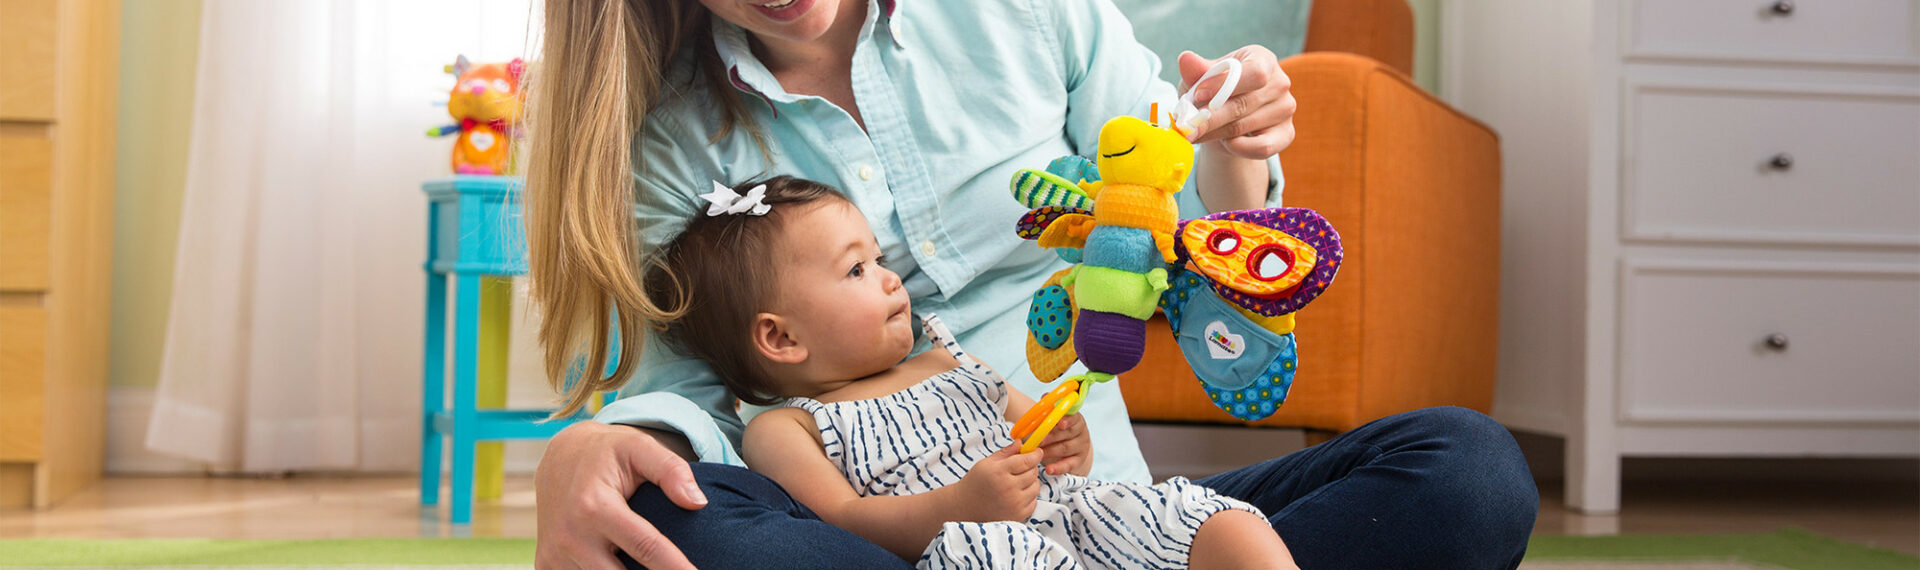 Mutter mit Kind im Arm und Freddie das Glühwürmchen Spielzeug